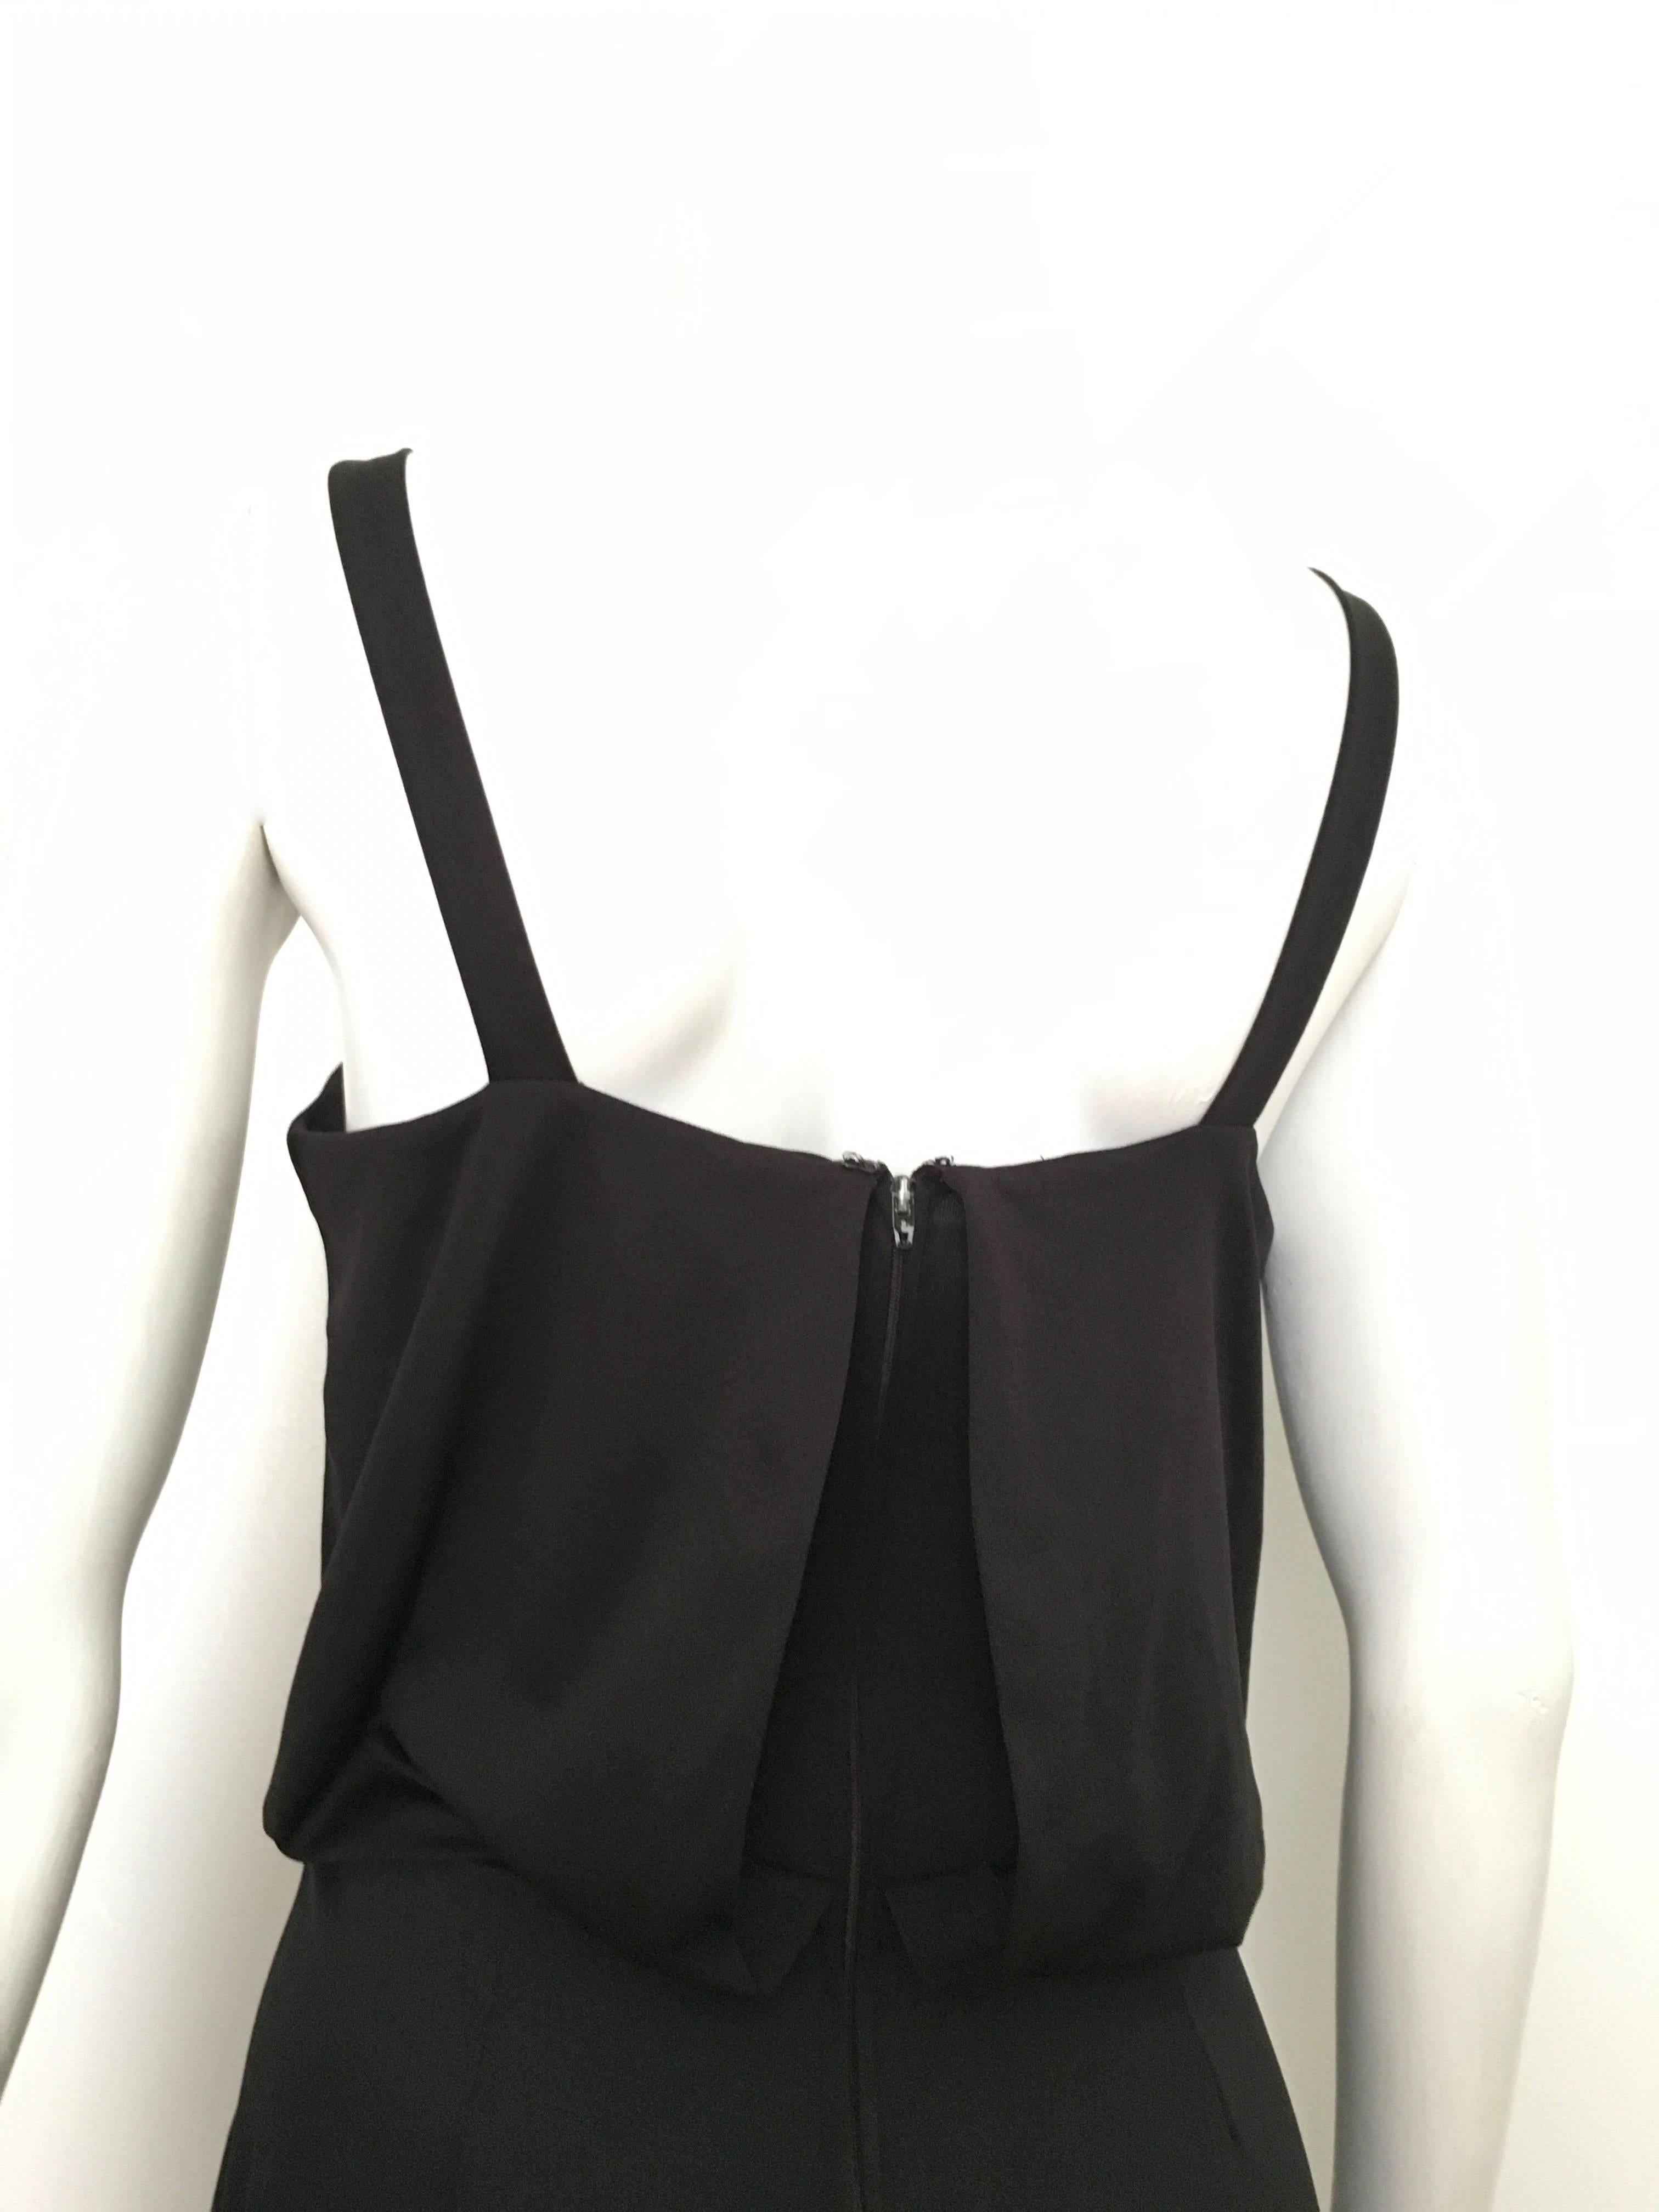 Teena Paige 1960s Black Jumpsuit 4 / 6.  For Sale 1